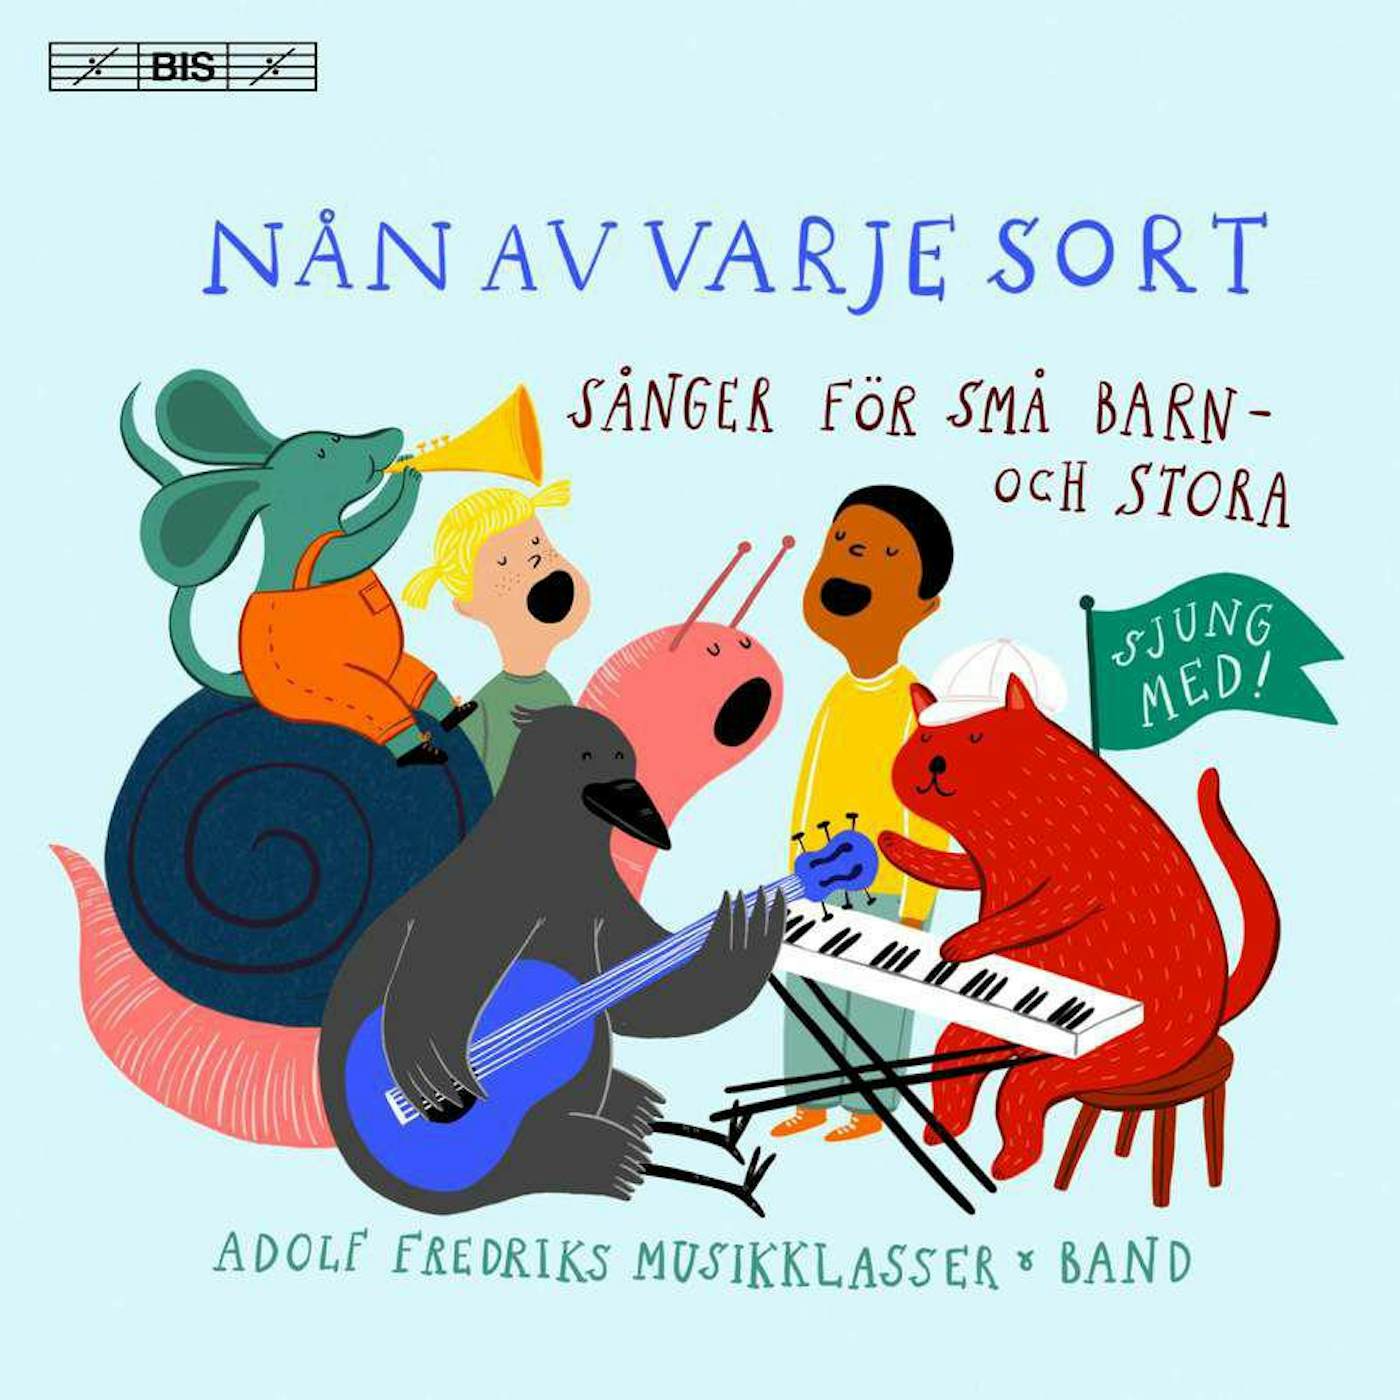  Various Artists NAN AV VARJE SORT / VARIOUS CD